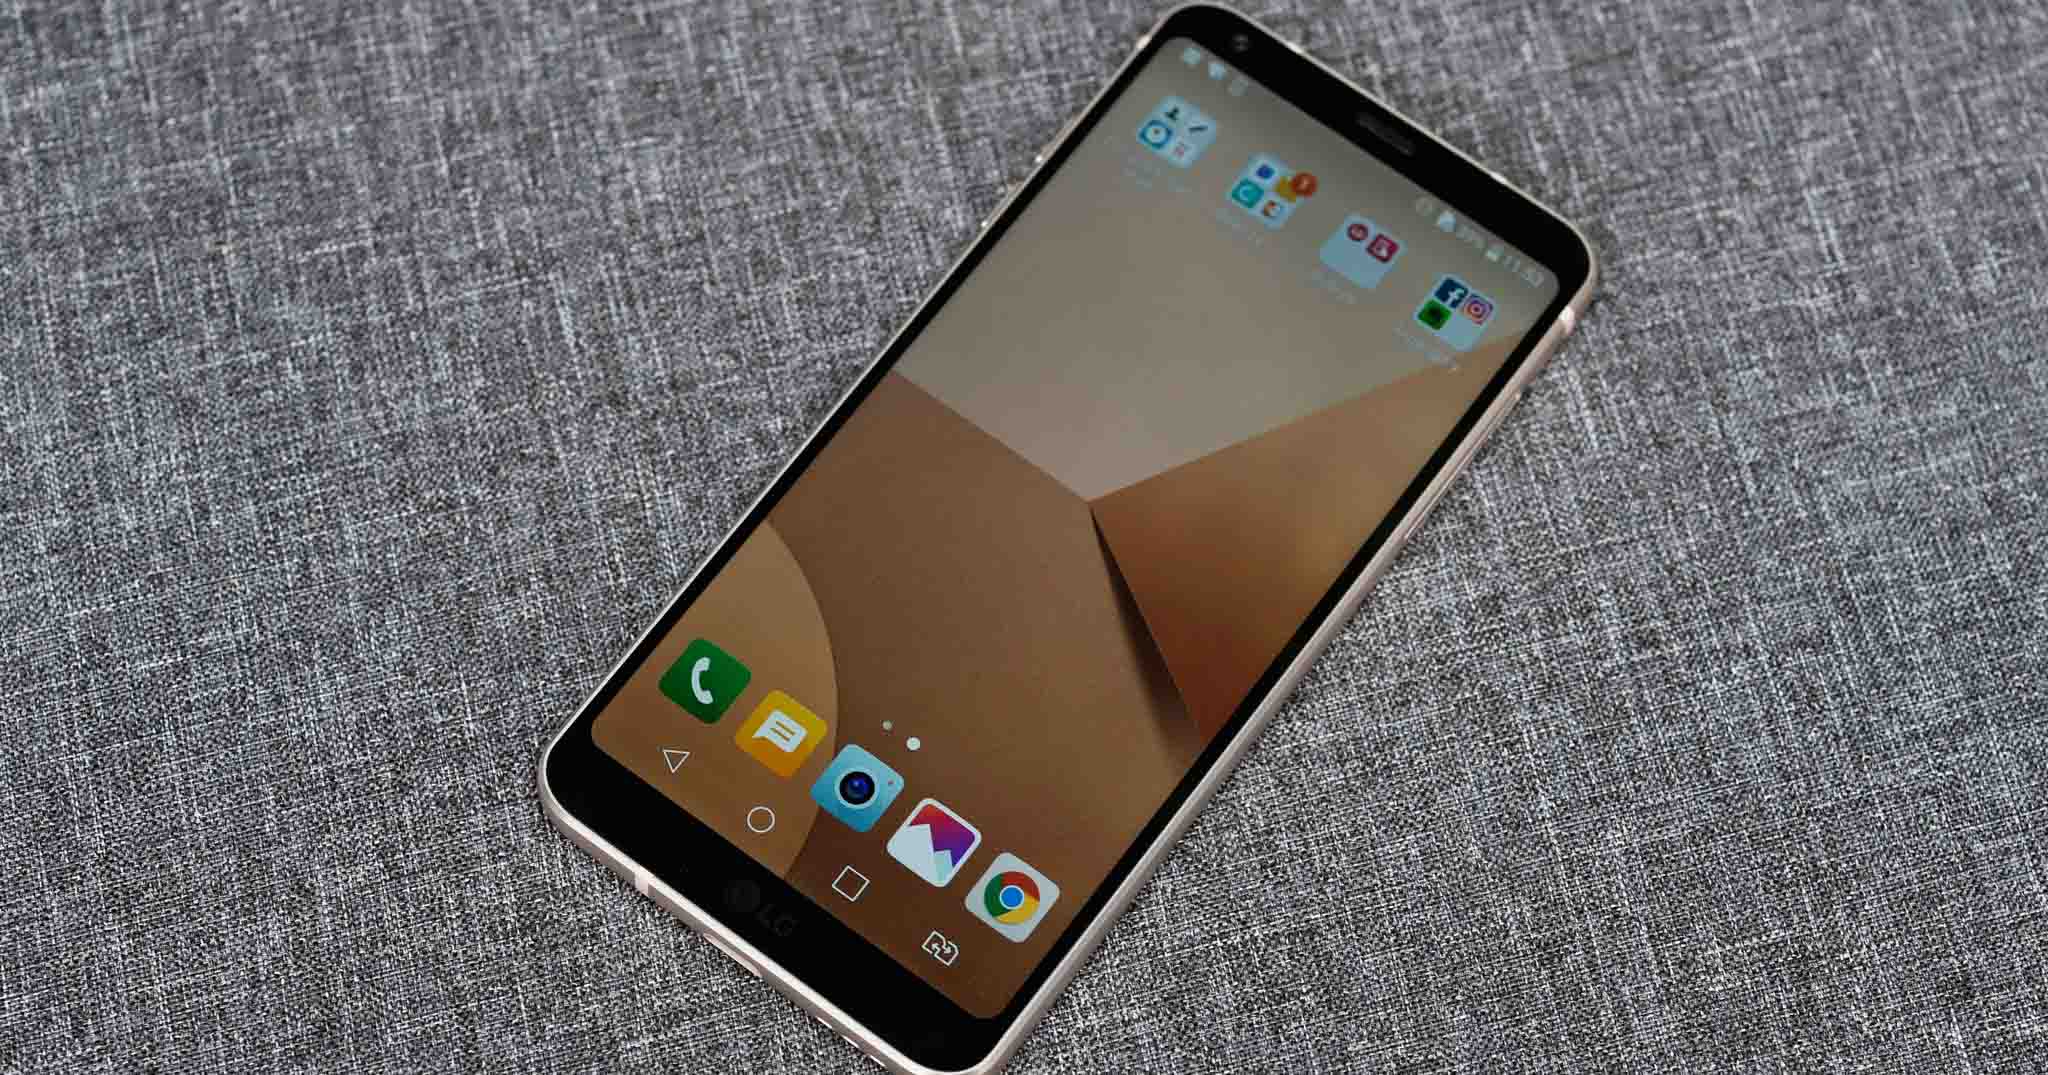 LG G7 sẽ quay lại sử dụng màn hình LCD thay vì OLED?